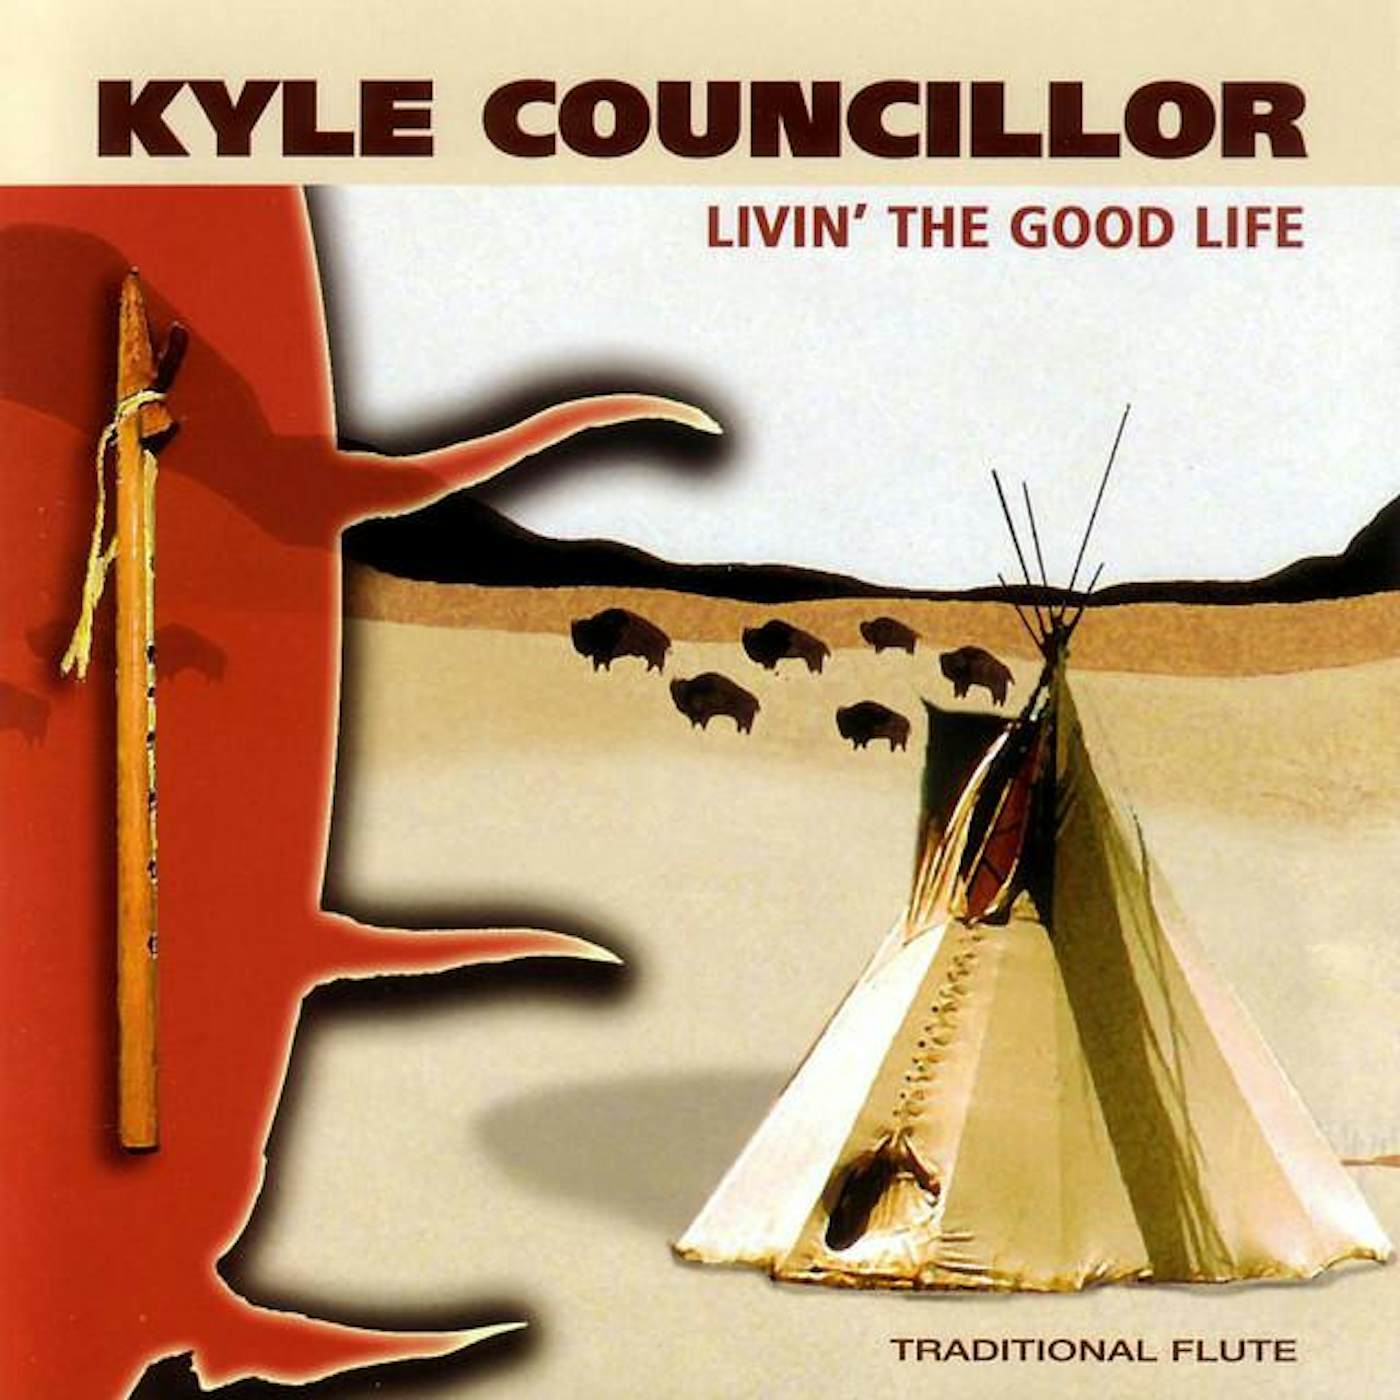 Kyle Councillor